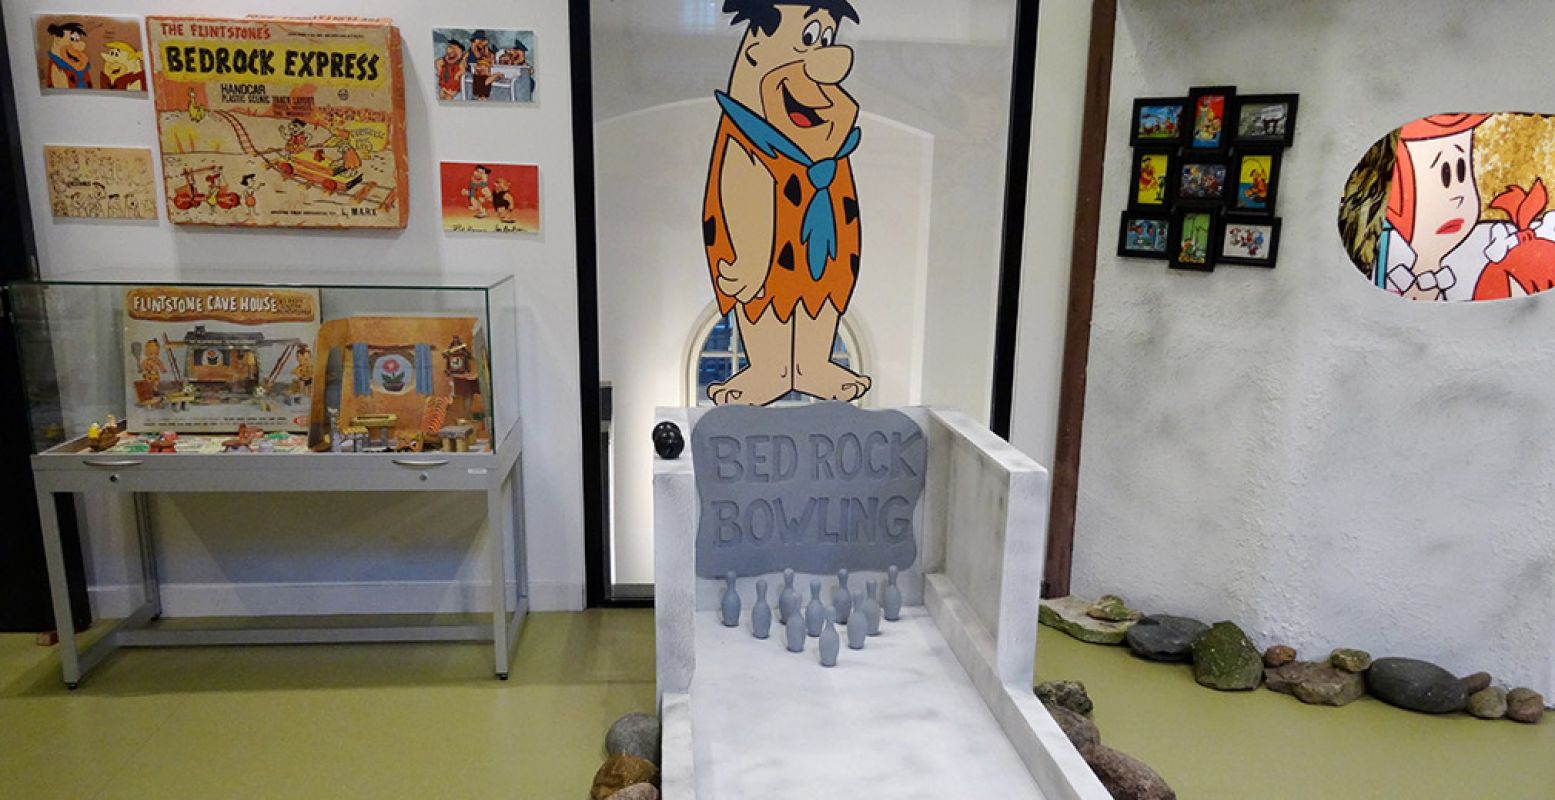 Speel een potje prehistorisch kegelen met Fred Flintstone op de Flintstones tentoonstelling. Foto: Martijn de Vries